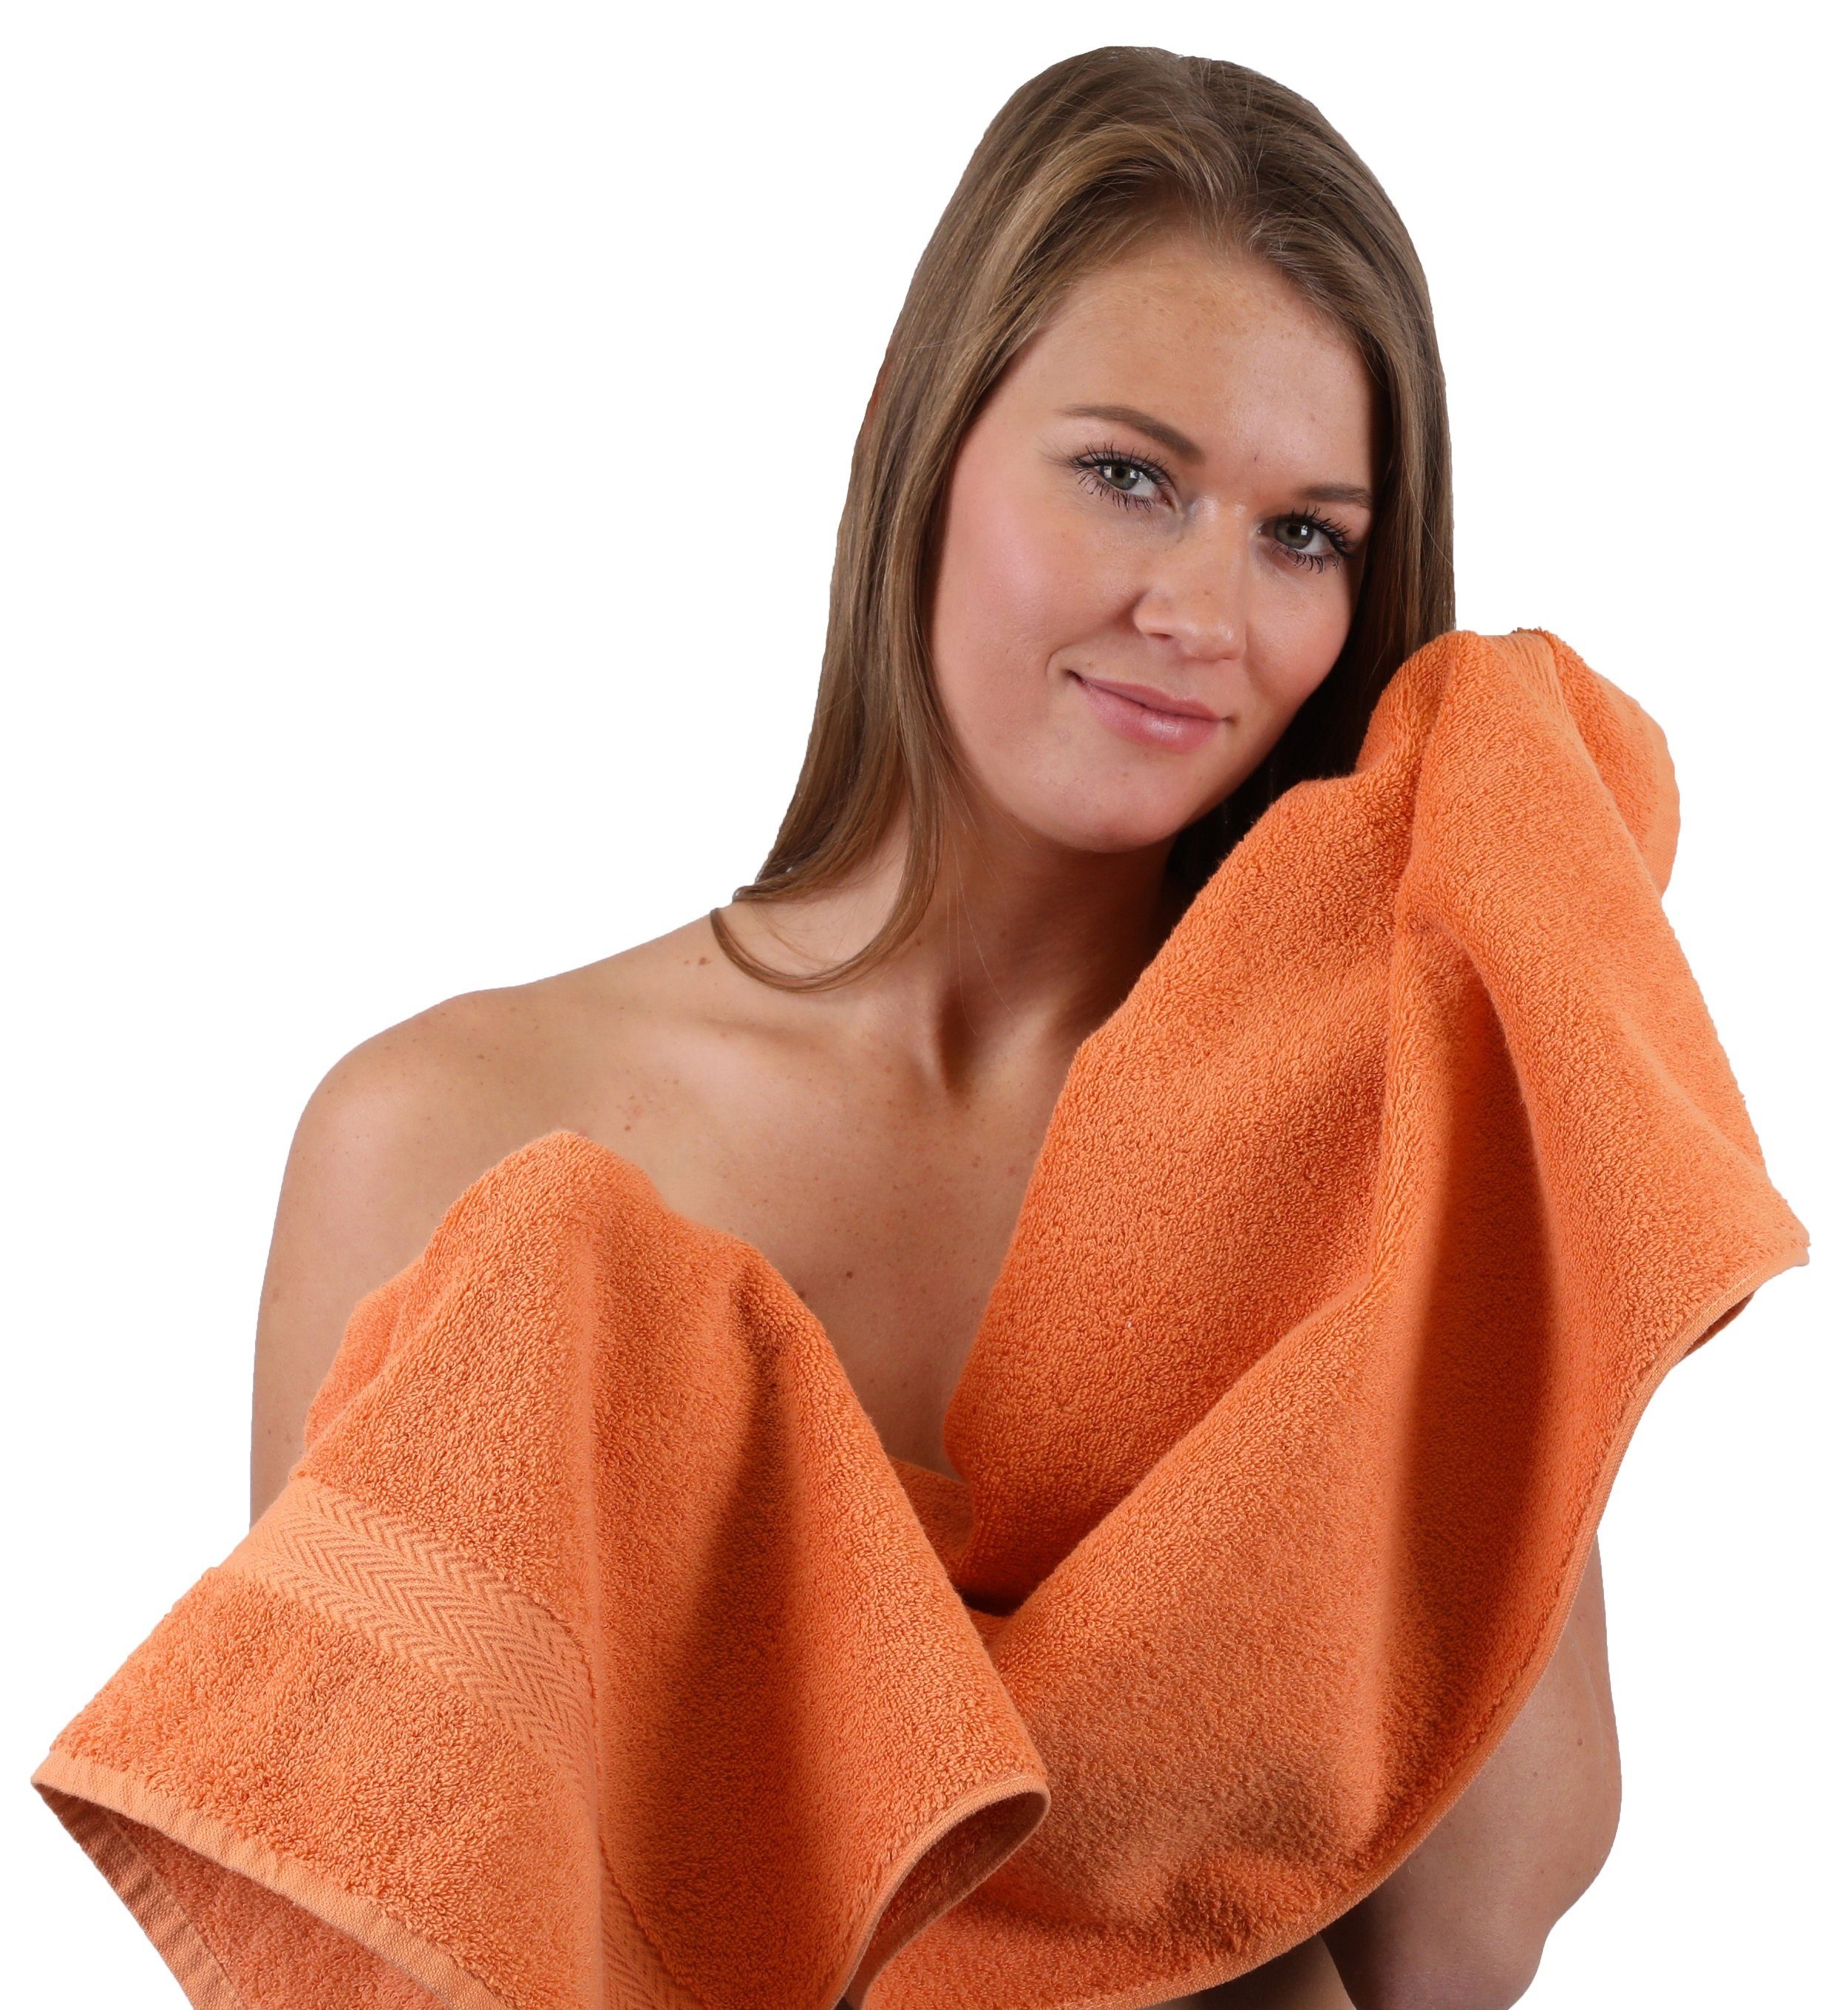 Baumwolle, 10-TLG. Türkis, & Orange Betz Farbe 100% Premium Handtuch Set Handtuch-Set (10-tlg)